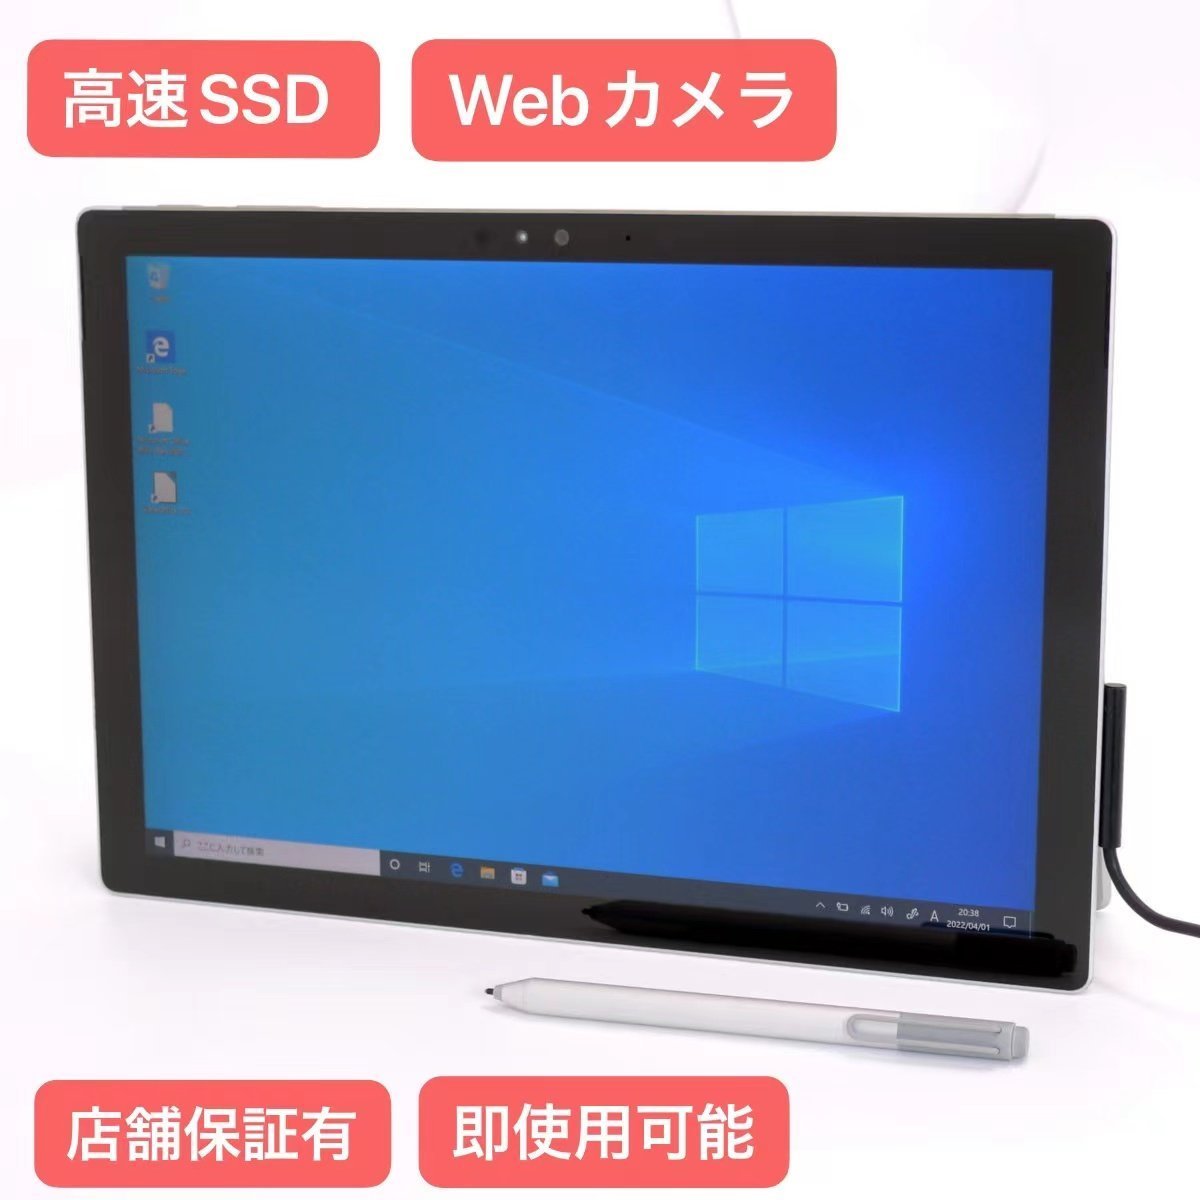 商舗 今日の超目玉 送料無料 売り尽くしセール 中古美品 ペン付 タブレット Surface Pro 4 第6世代 m3-6Y30 高速SSD 4GB Wi-Fi Bluetooth Windpws10 Office mobius-studio.pl mobius-studio.pl